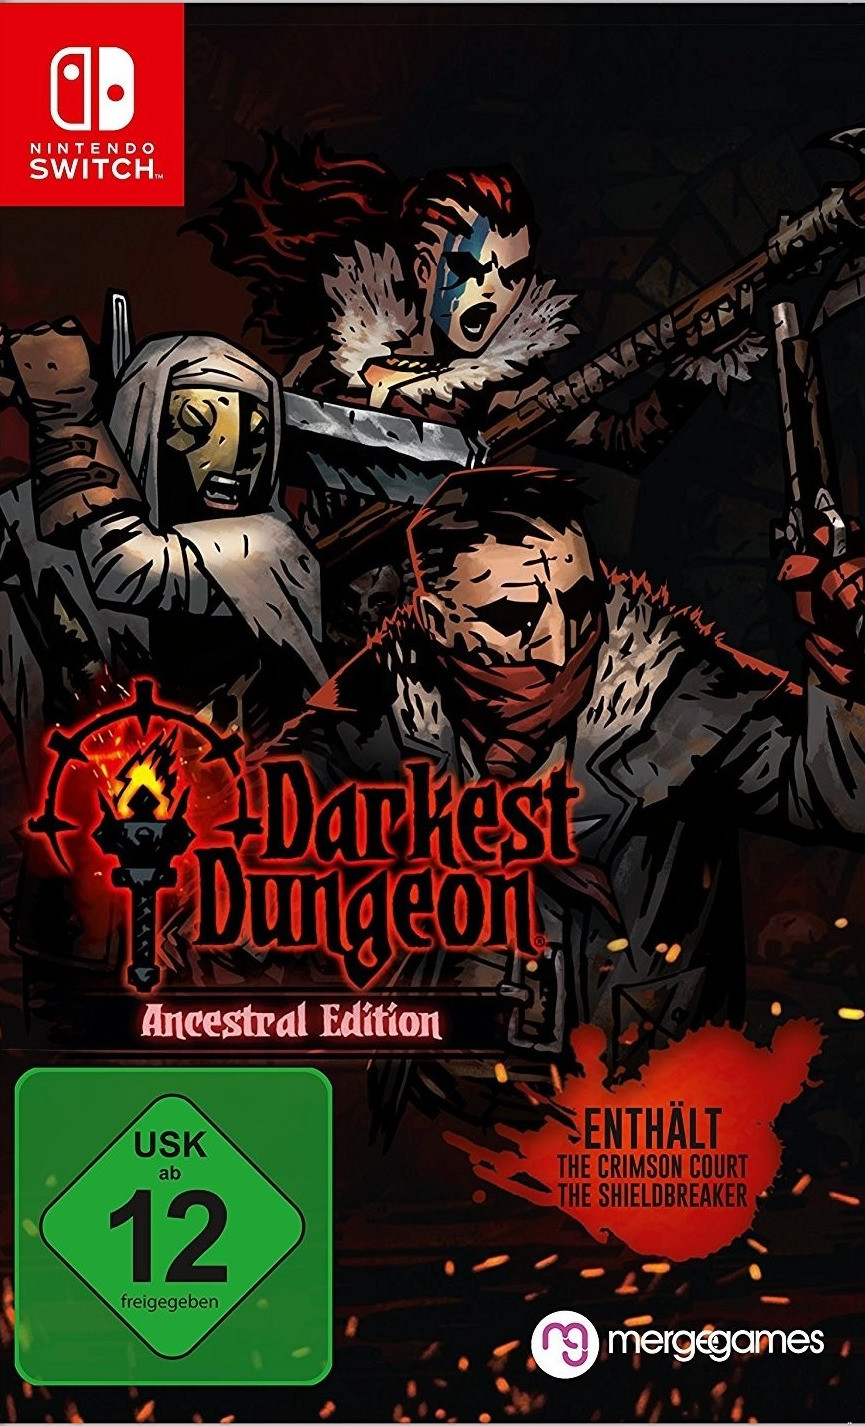 darkest dungeon 2 switch download free